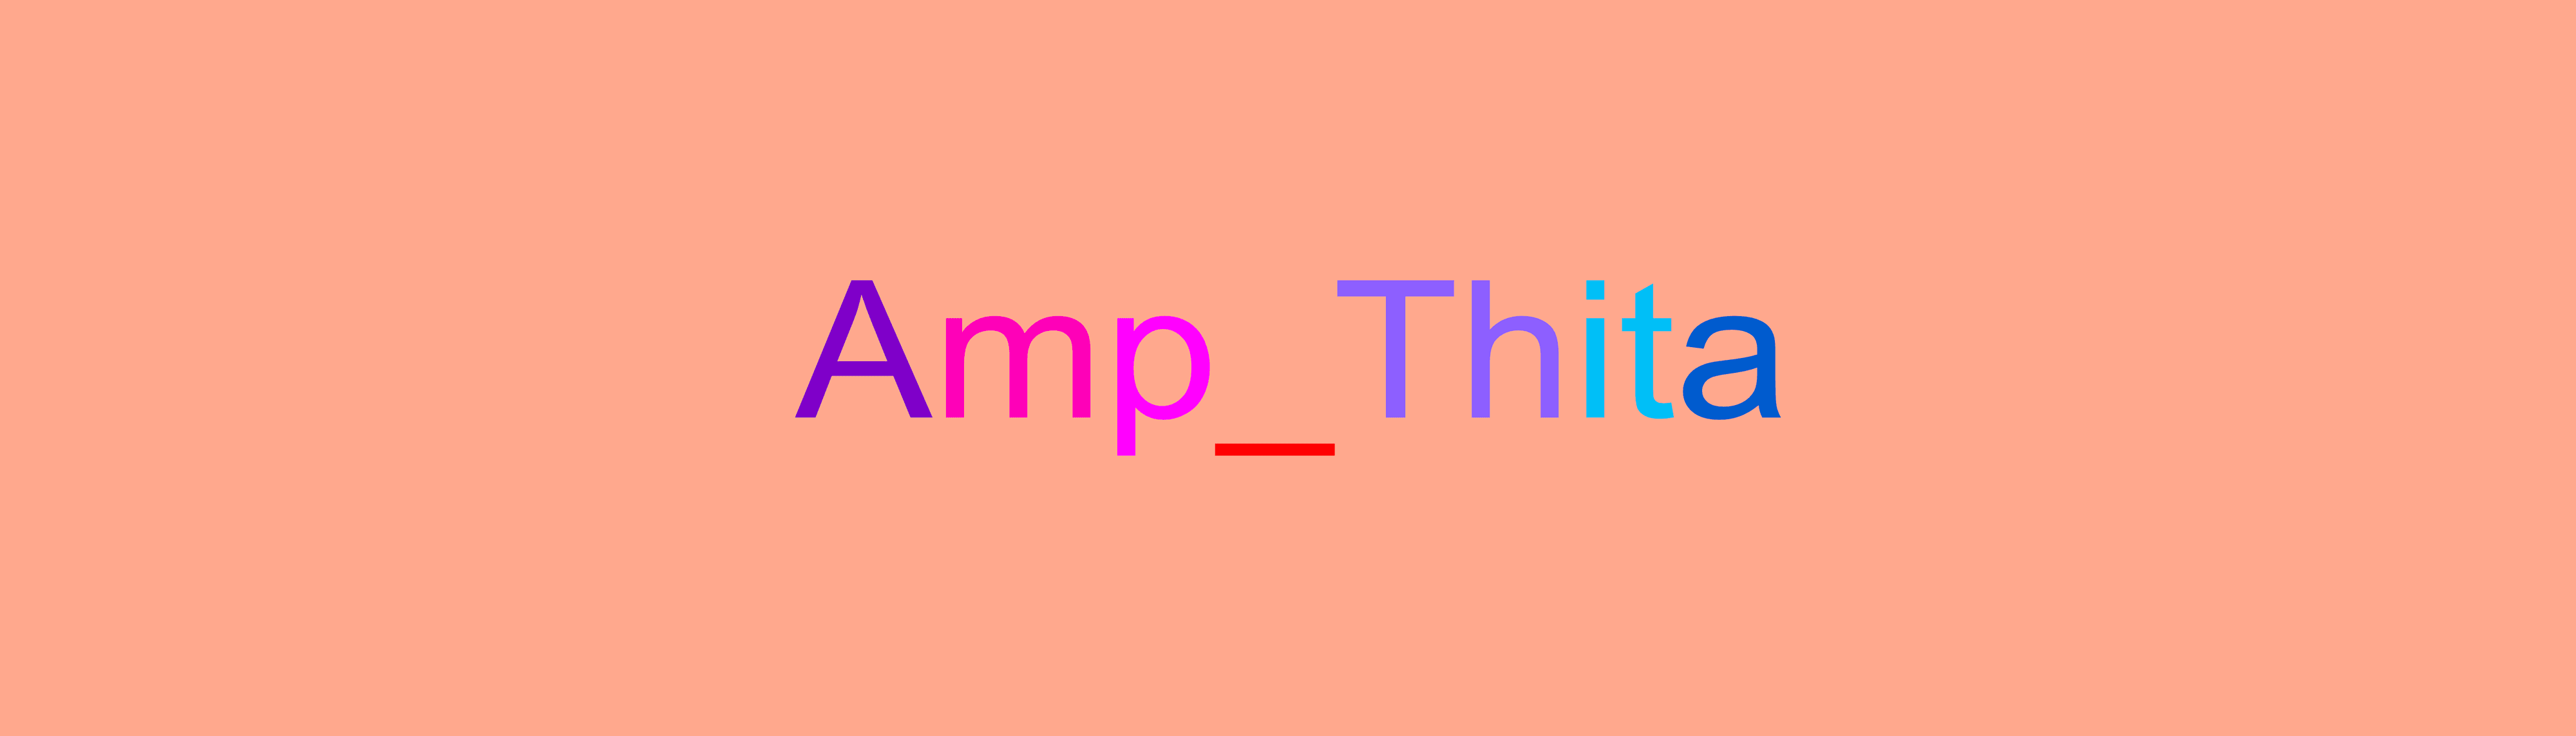 Amp_Thita 橫幅